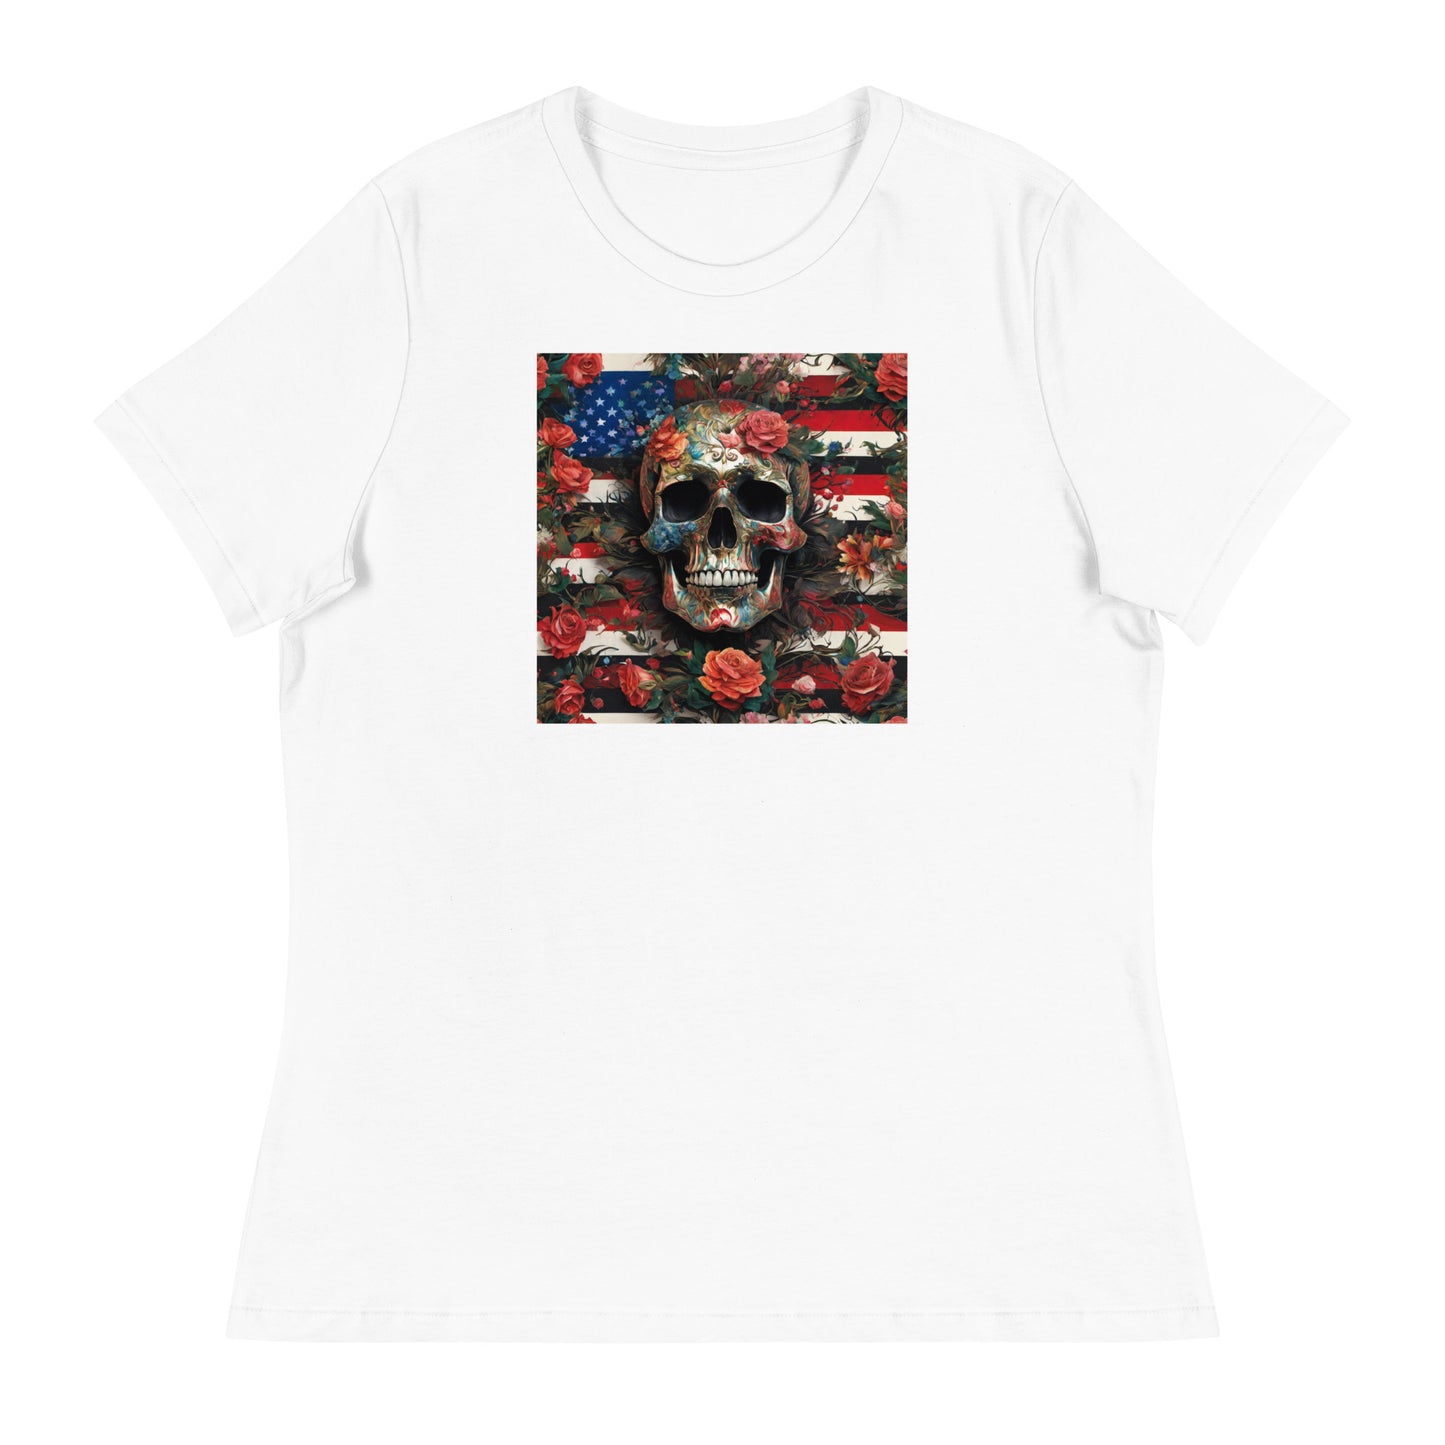 Skull, Roses, and Flag Women's Graphic T-Shirt White